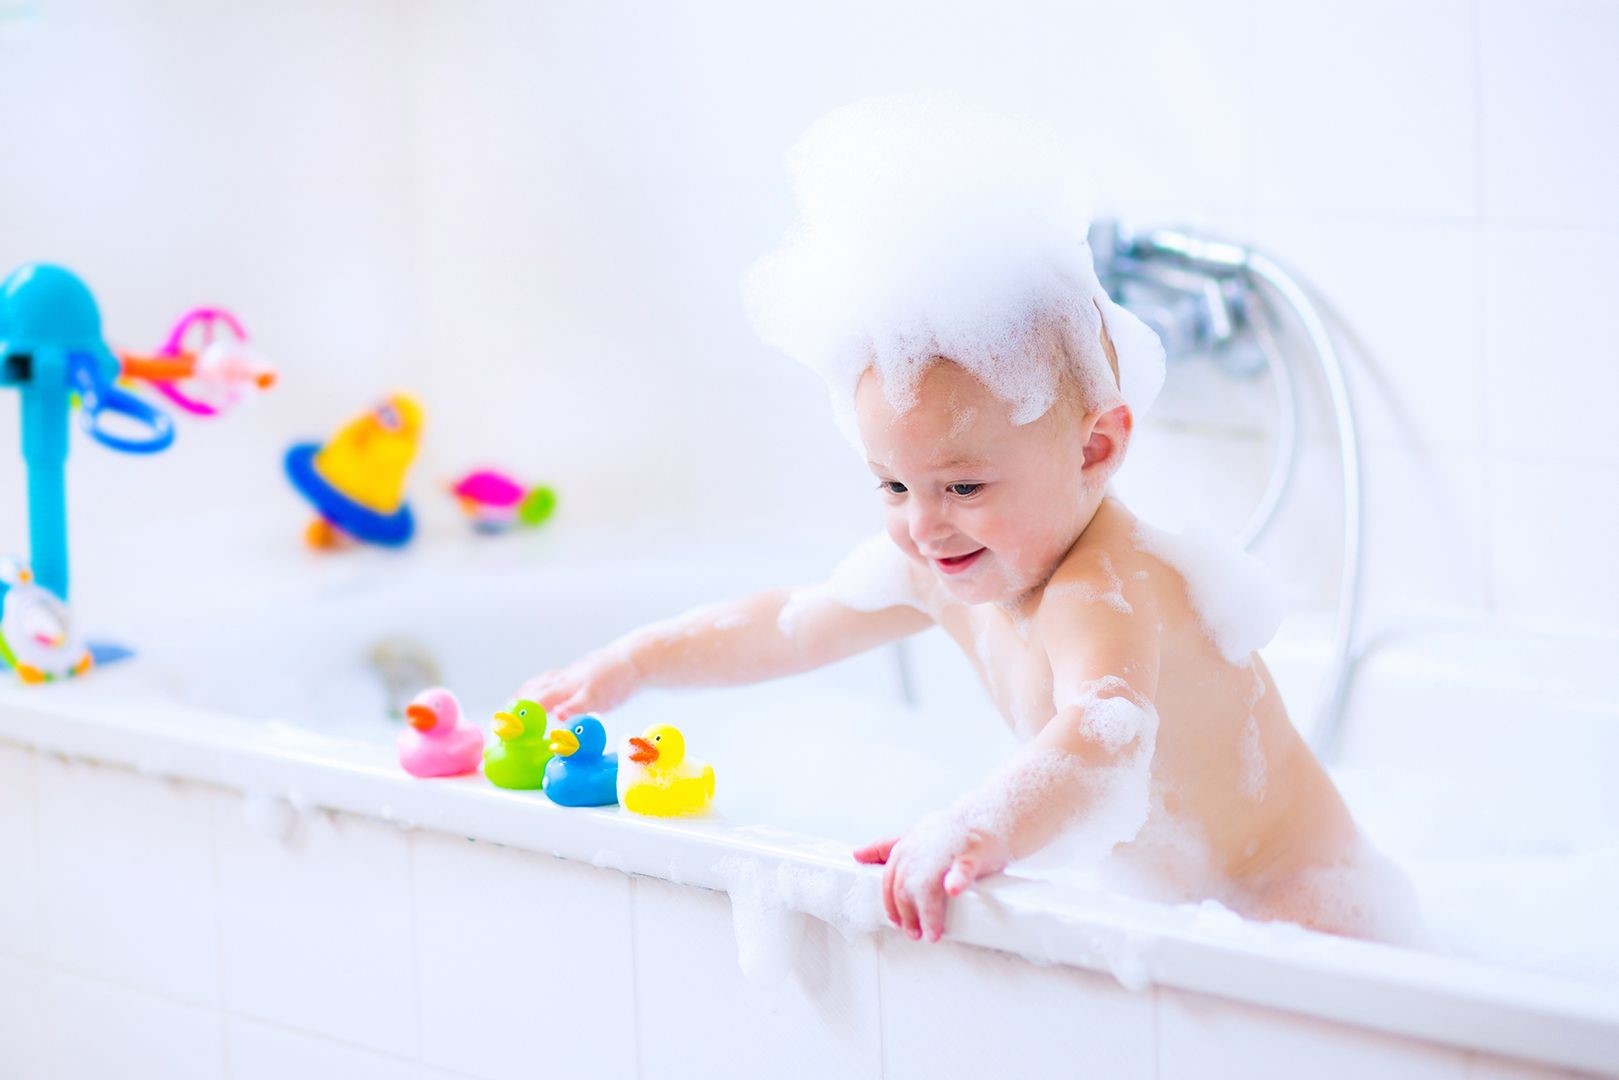 Child in bath tub